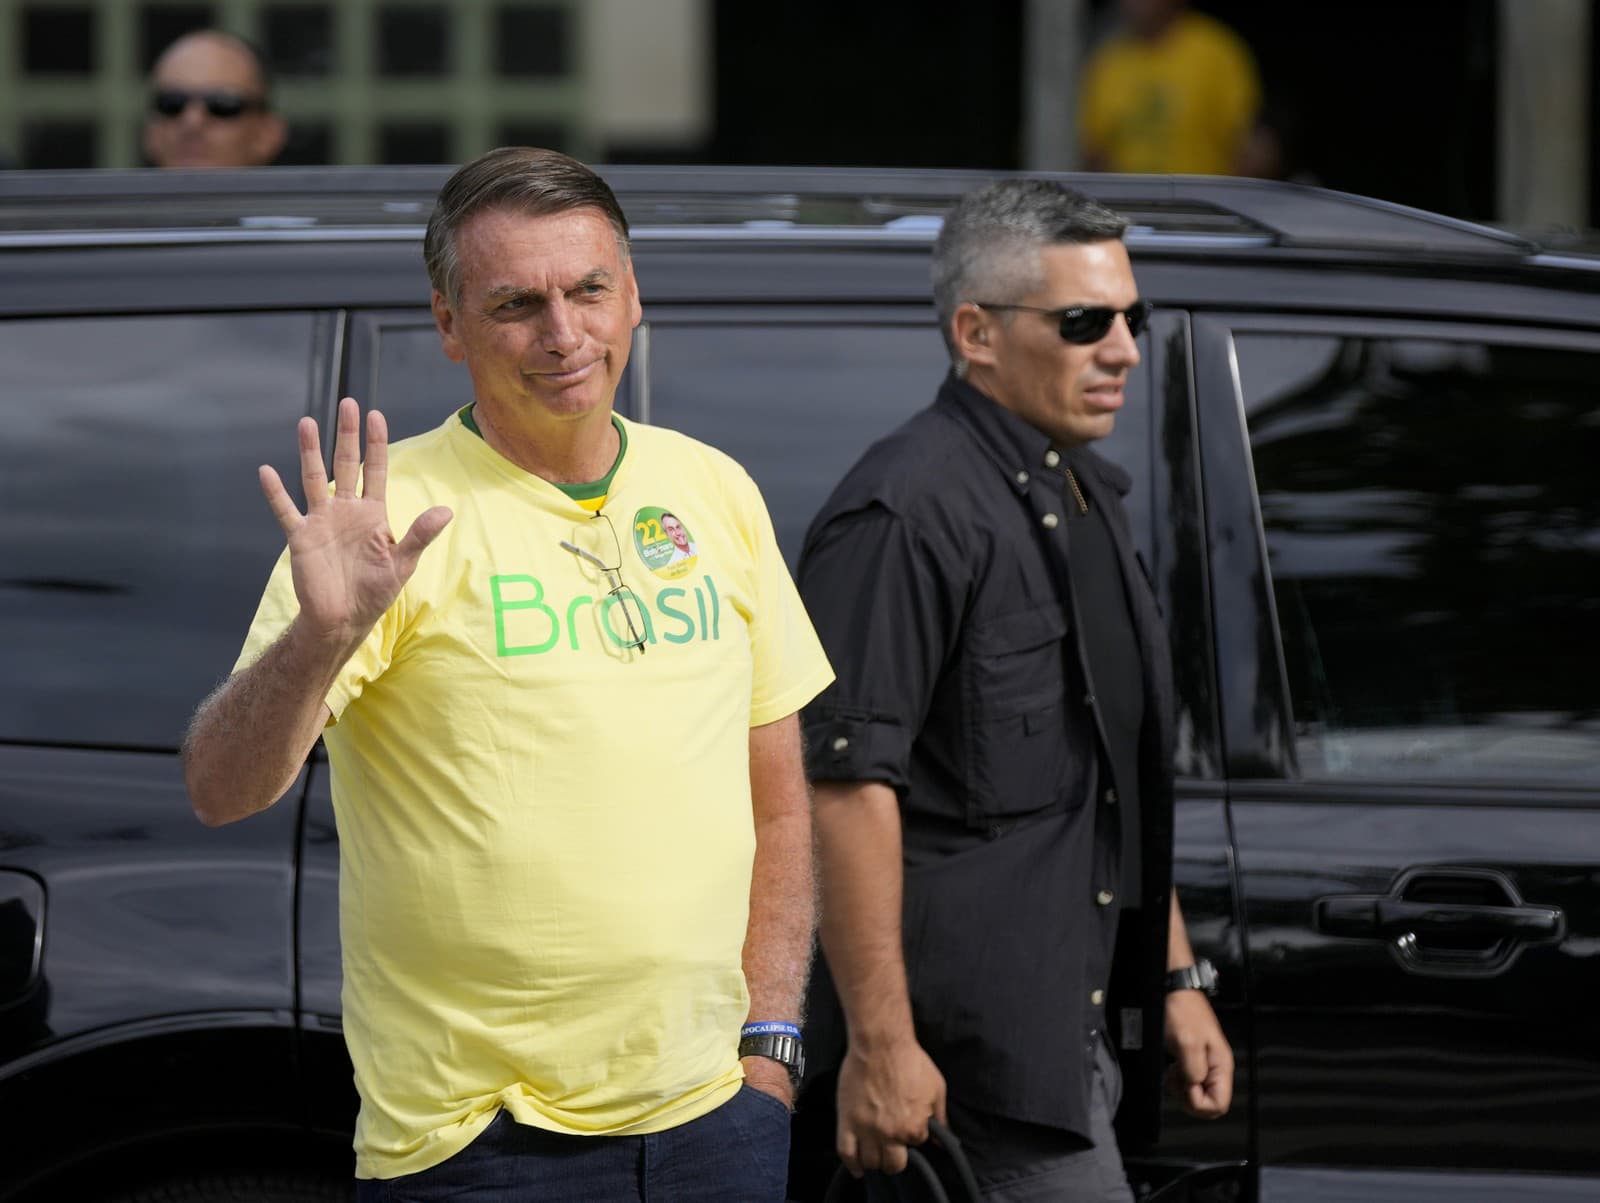 Brazílsky prezident Jair Bolsonaro (vľavo), ktorý sa uchádzal o ďalšie funkčné obdobie, prichádza voliť v druhom kole prezidentských volieb v brazílskom Riu de Janeiro v nedeľu 30. októbra 2022.